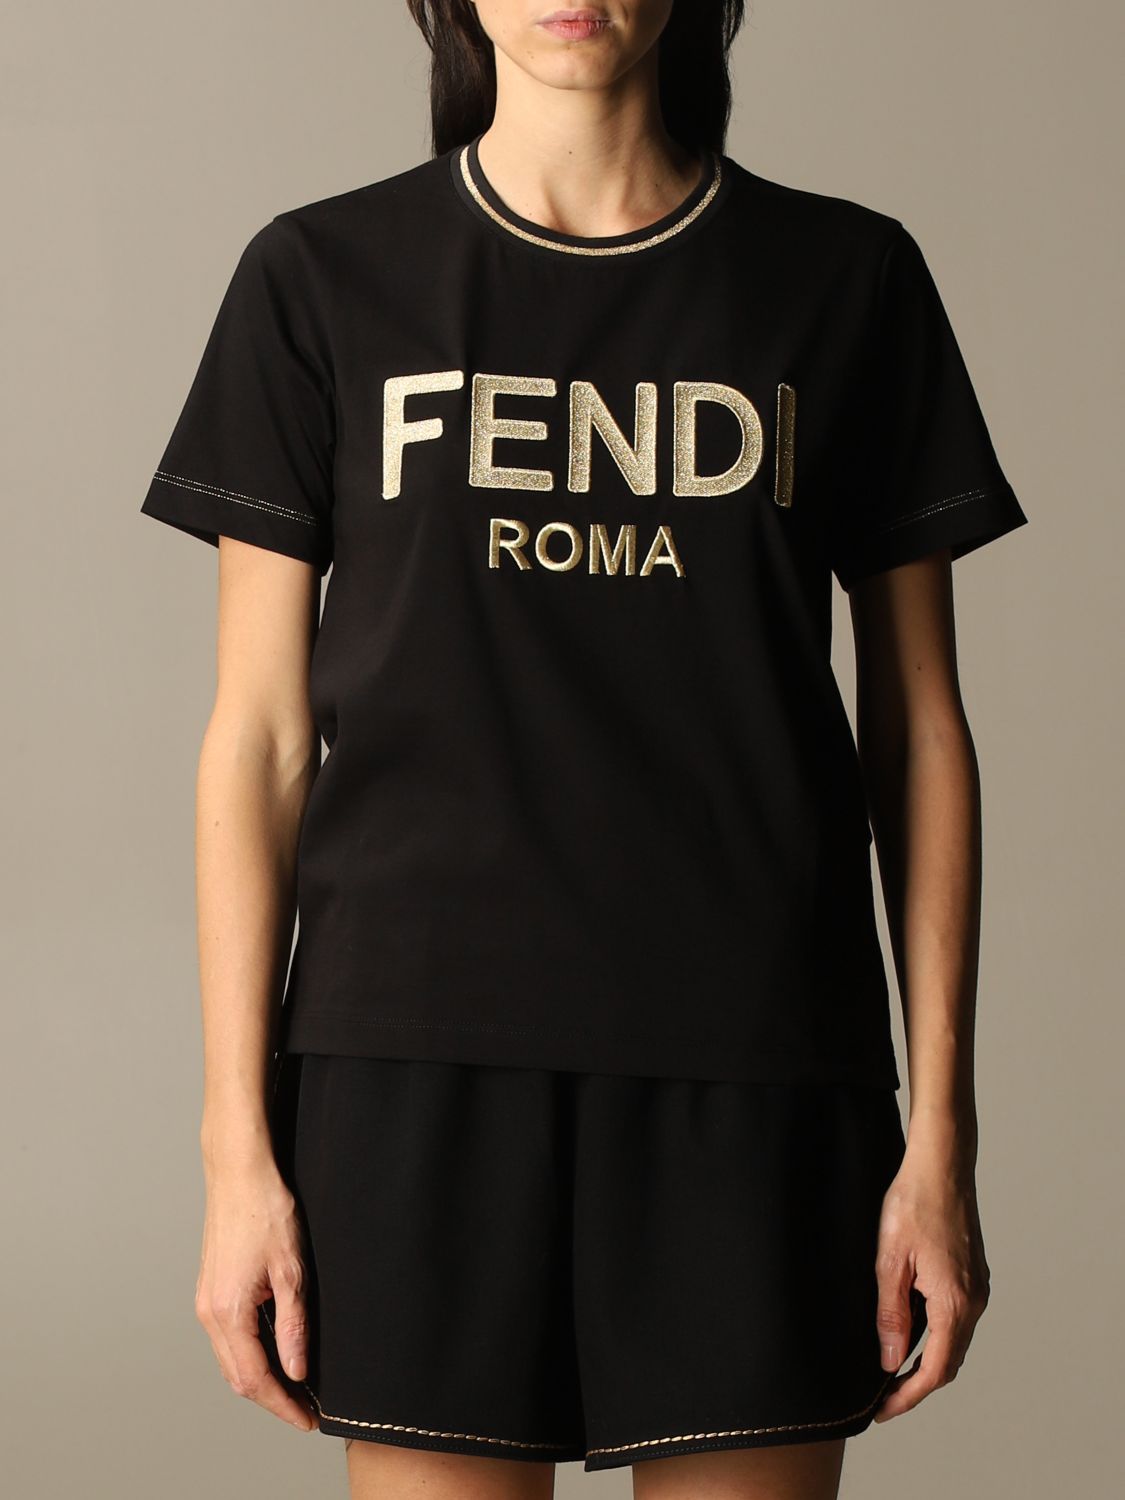 FENDI レディースTシャツ - www.bjmpmpc.com